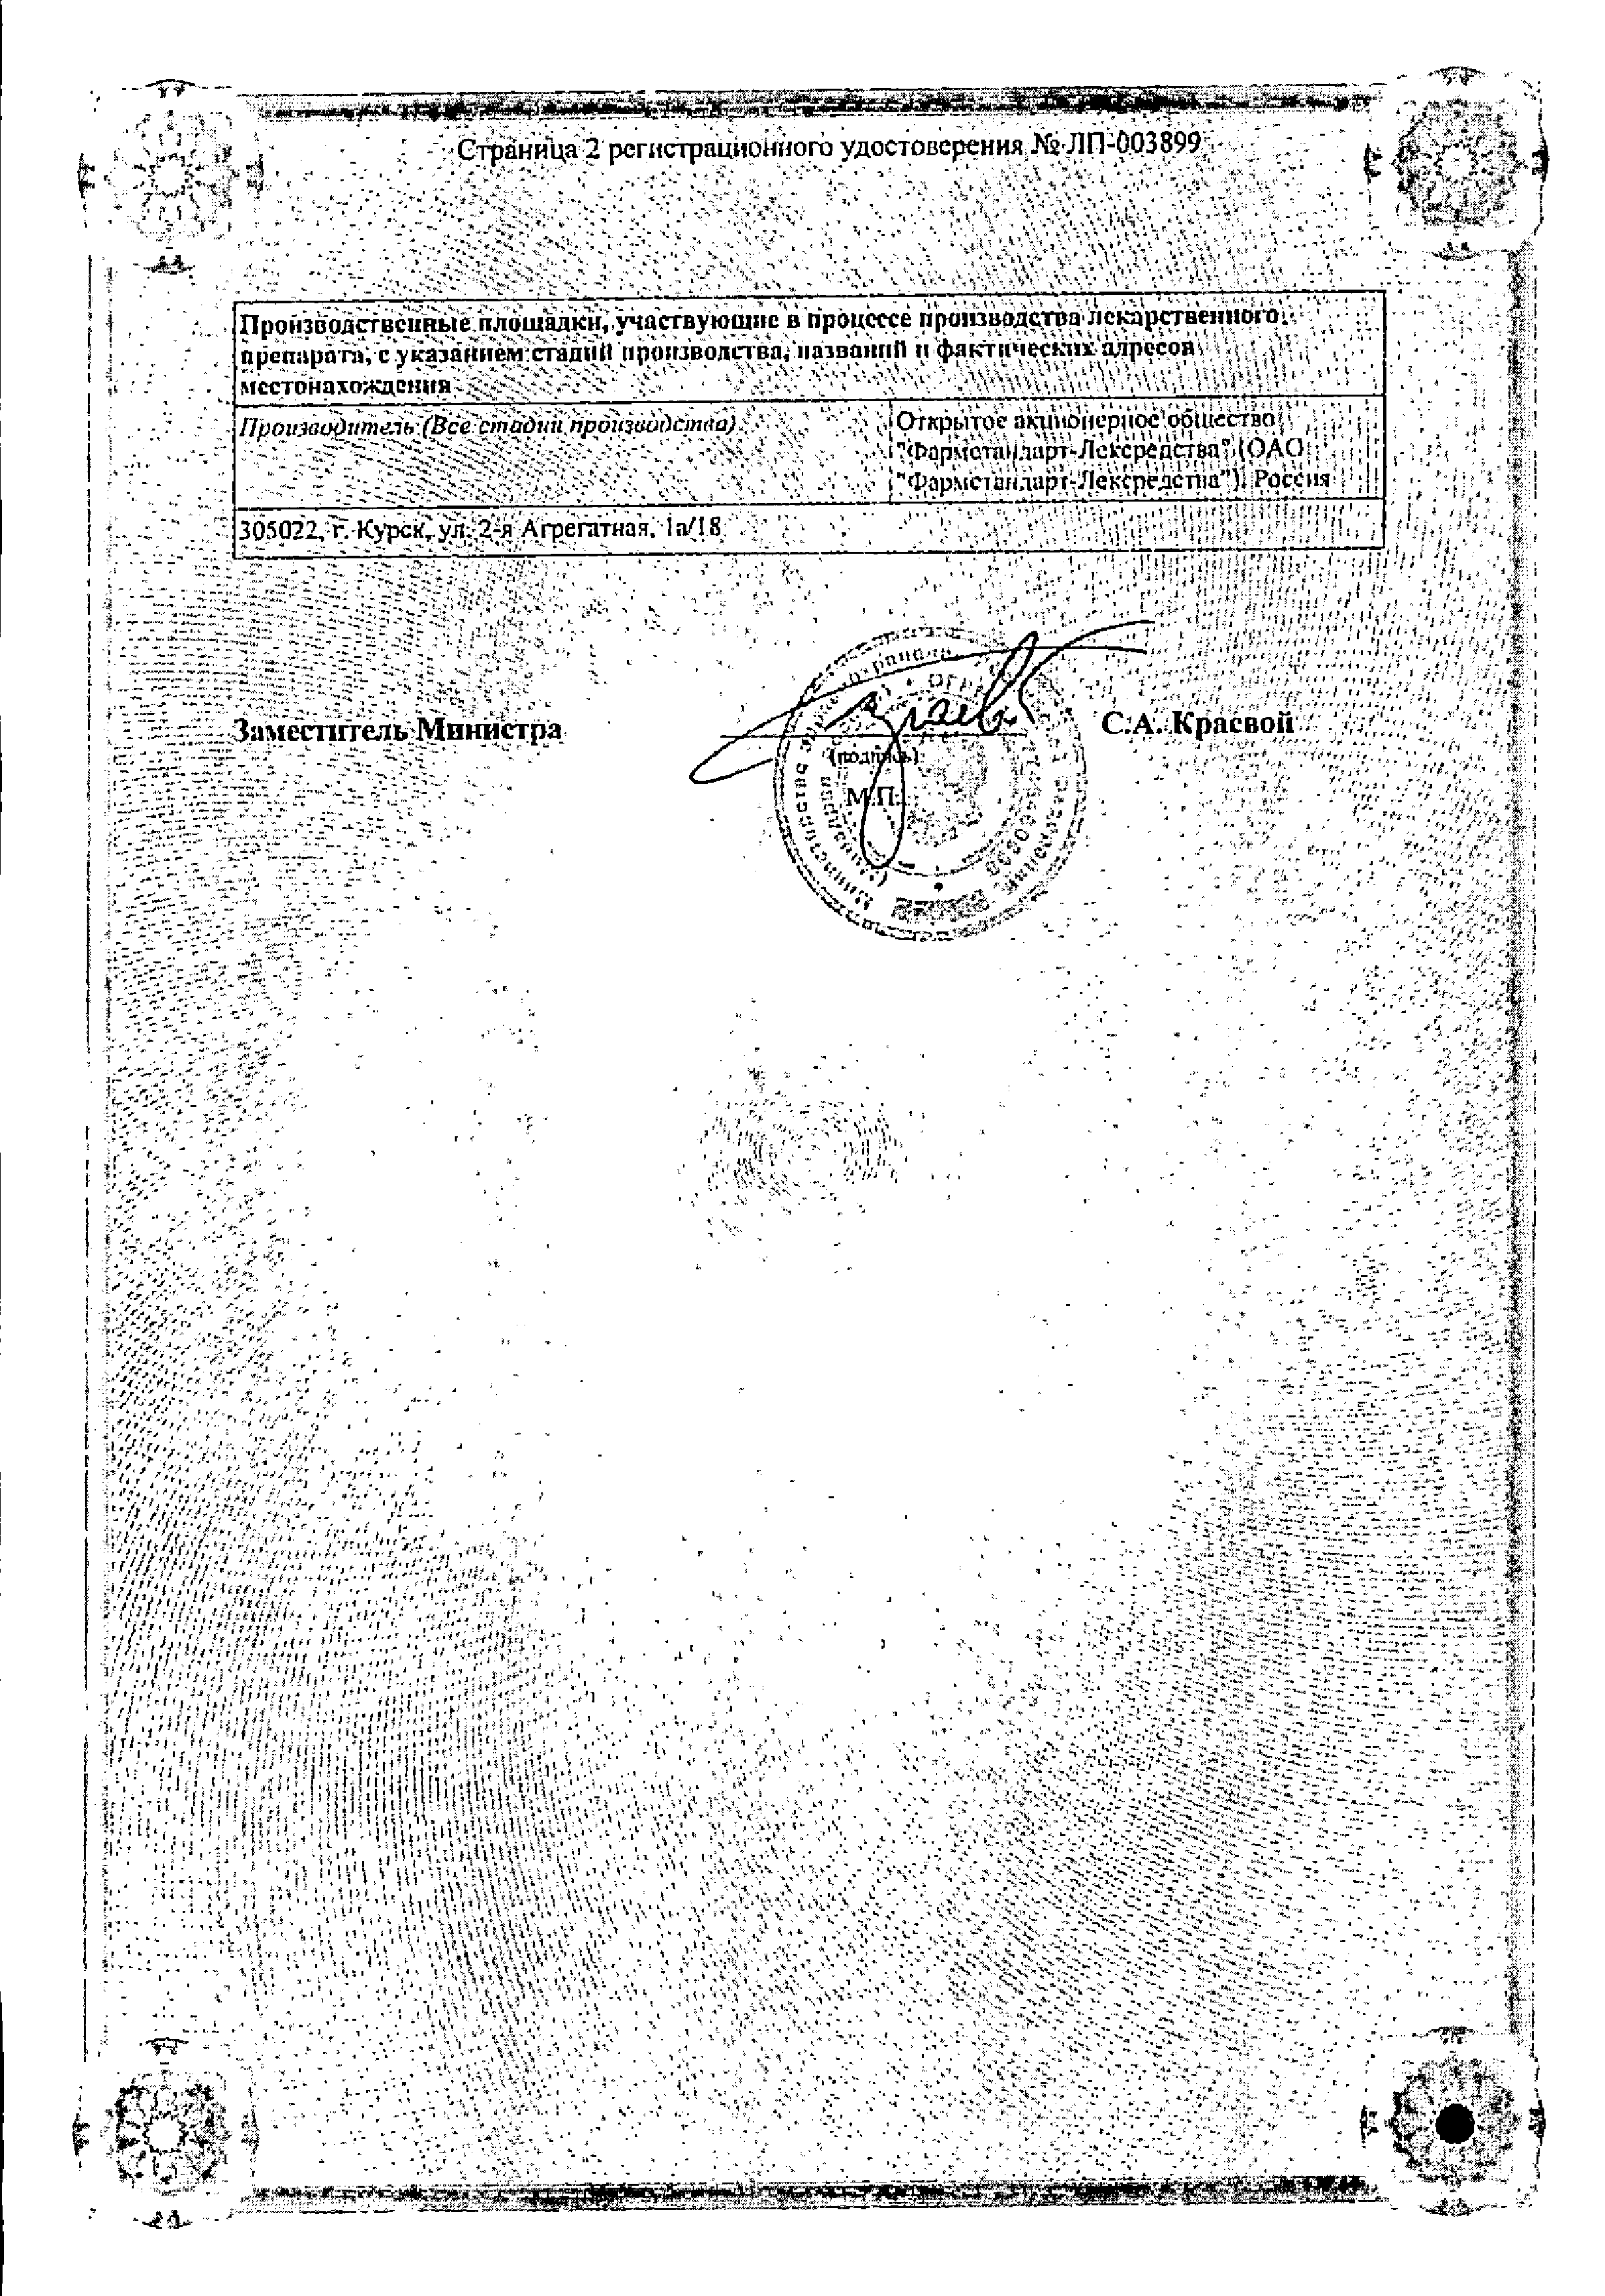 Сальбутамол-Фармстандарт сертификат